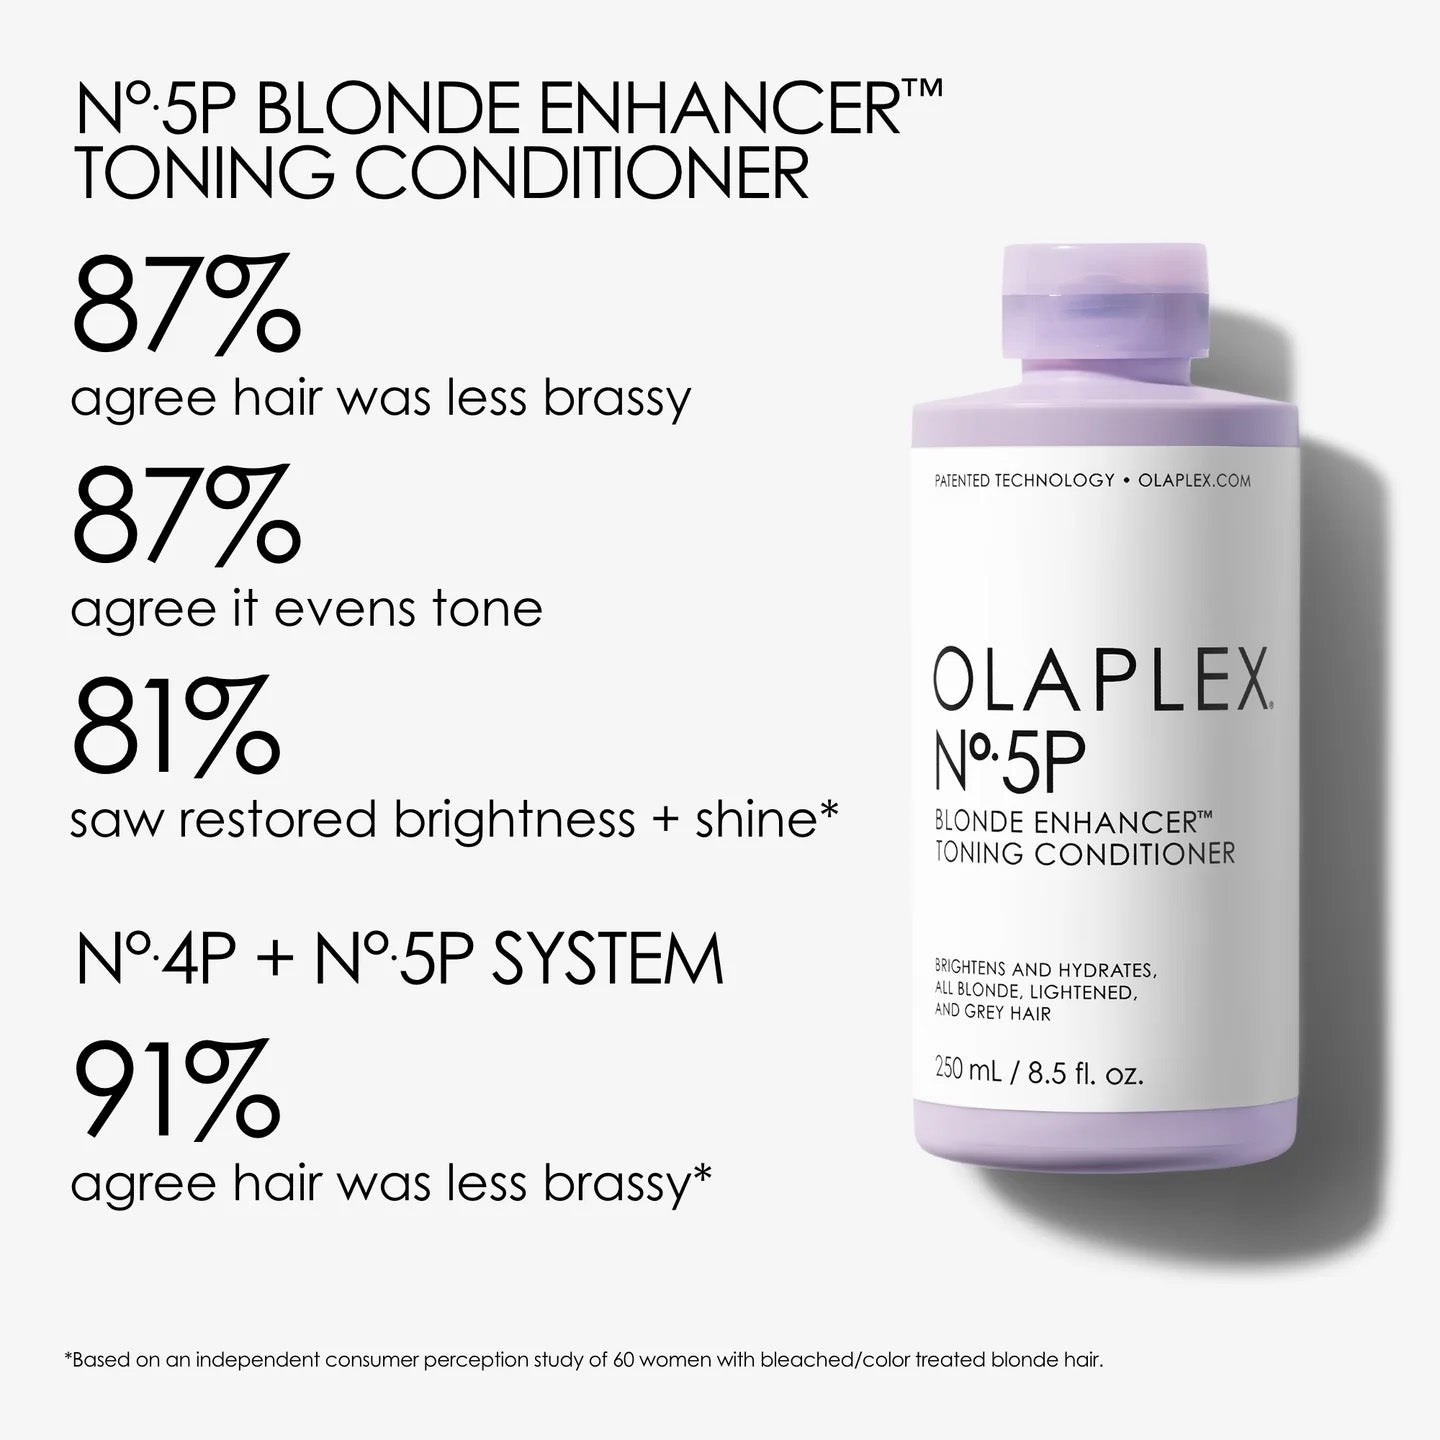 Olaplex No.5P Blonde Enhancer Toning conditoner